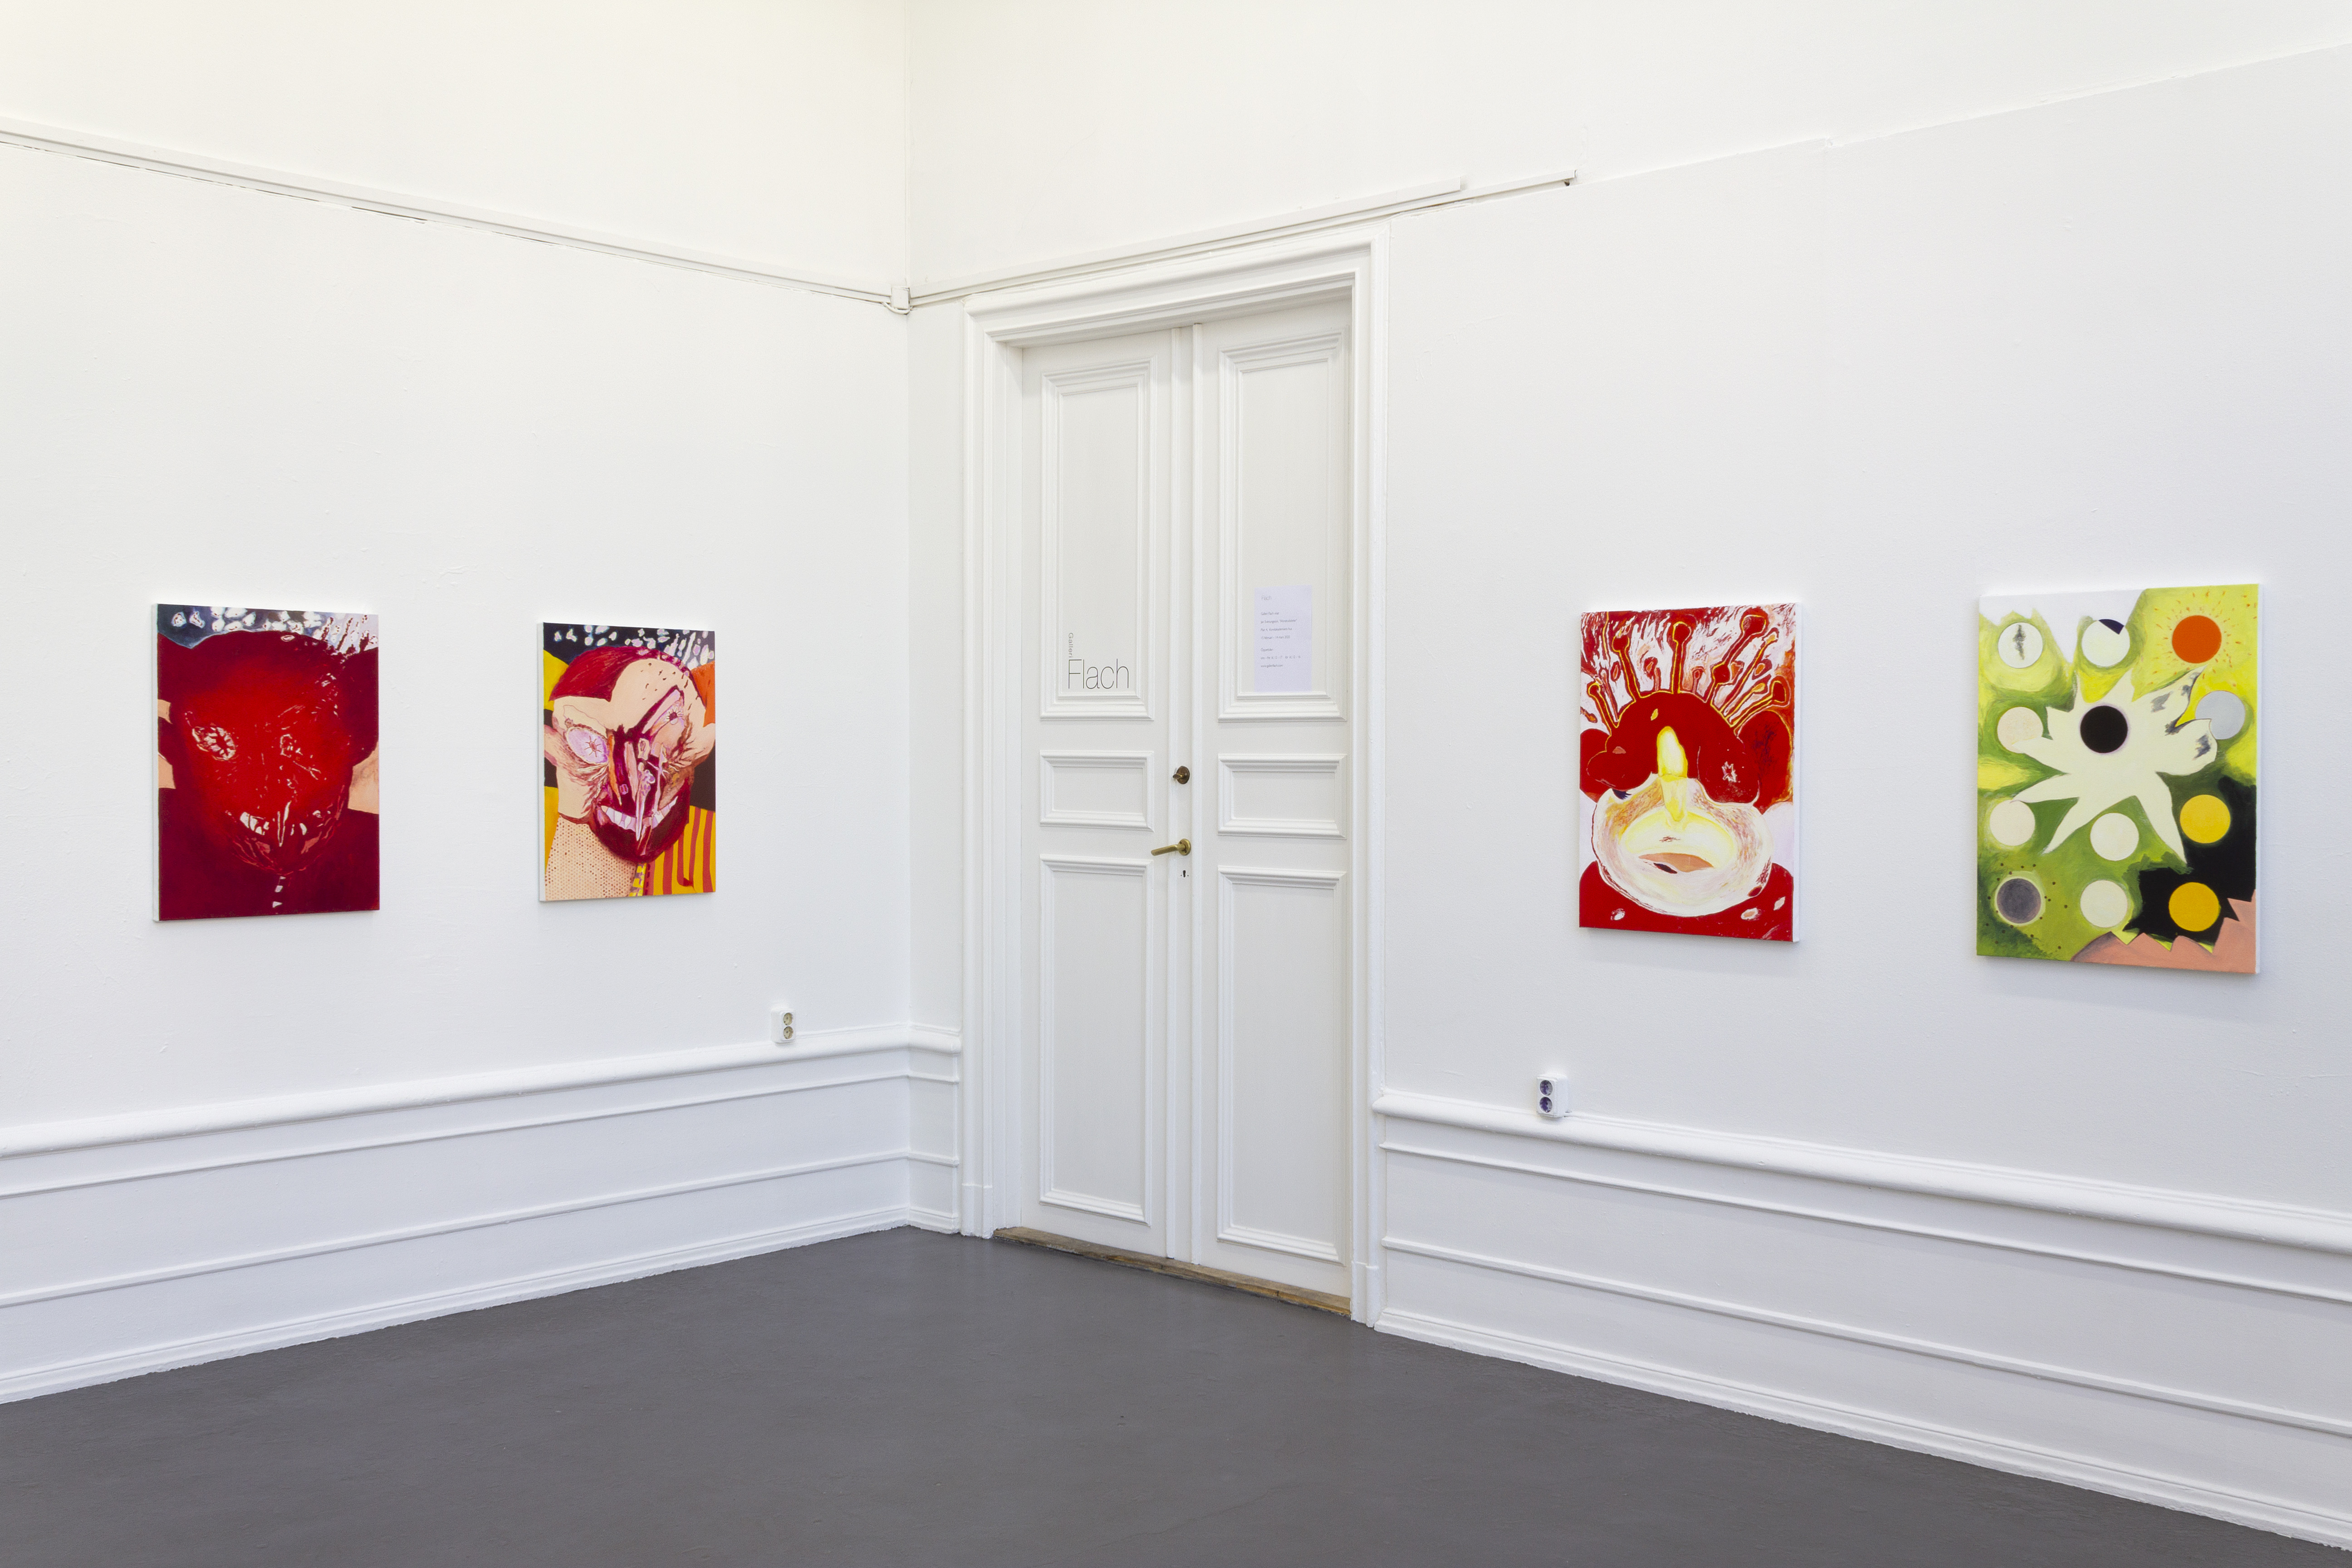 Jan Svenungsson, "Monstrosities", 2020, installation view, Galleri Flach